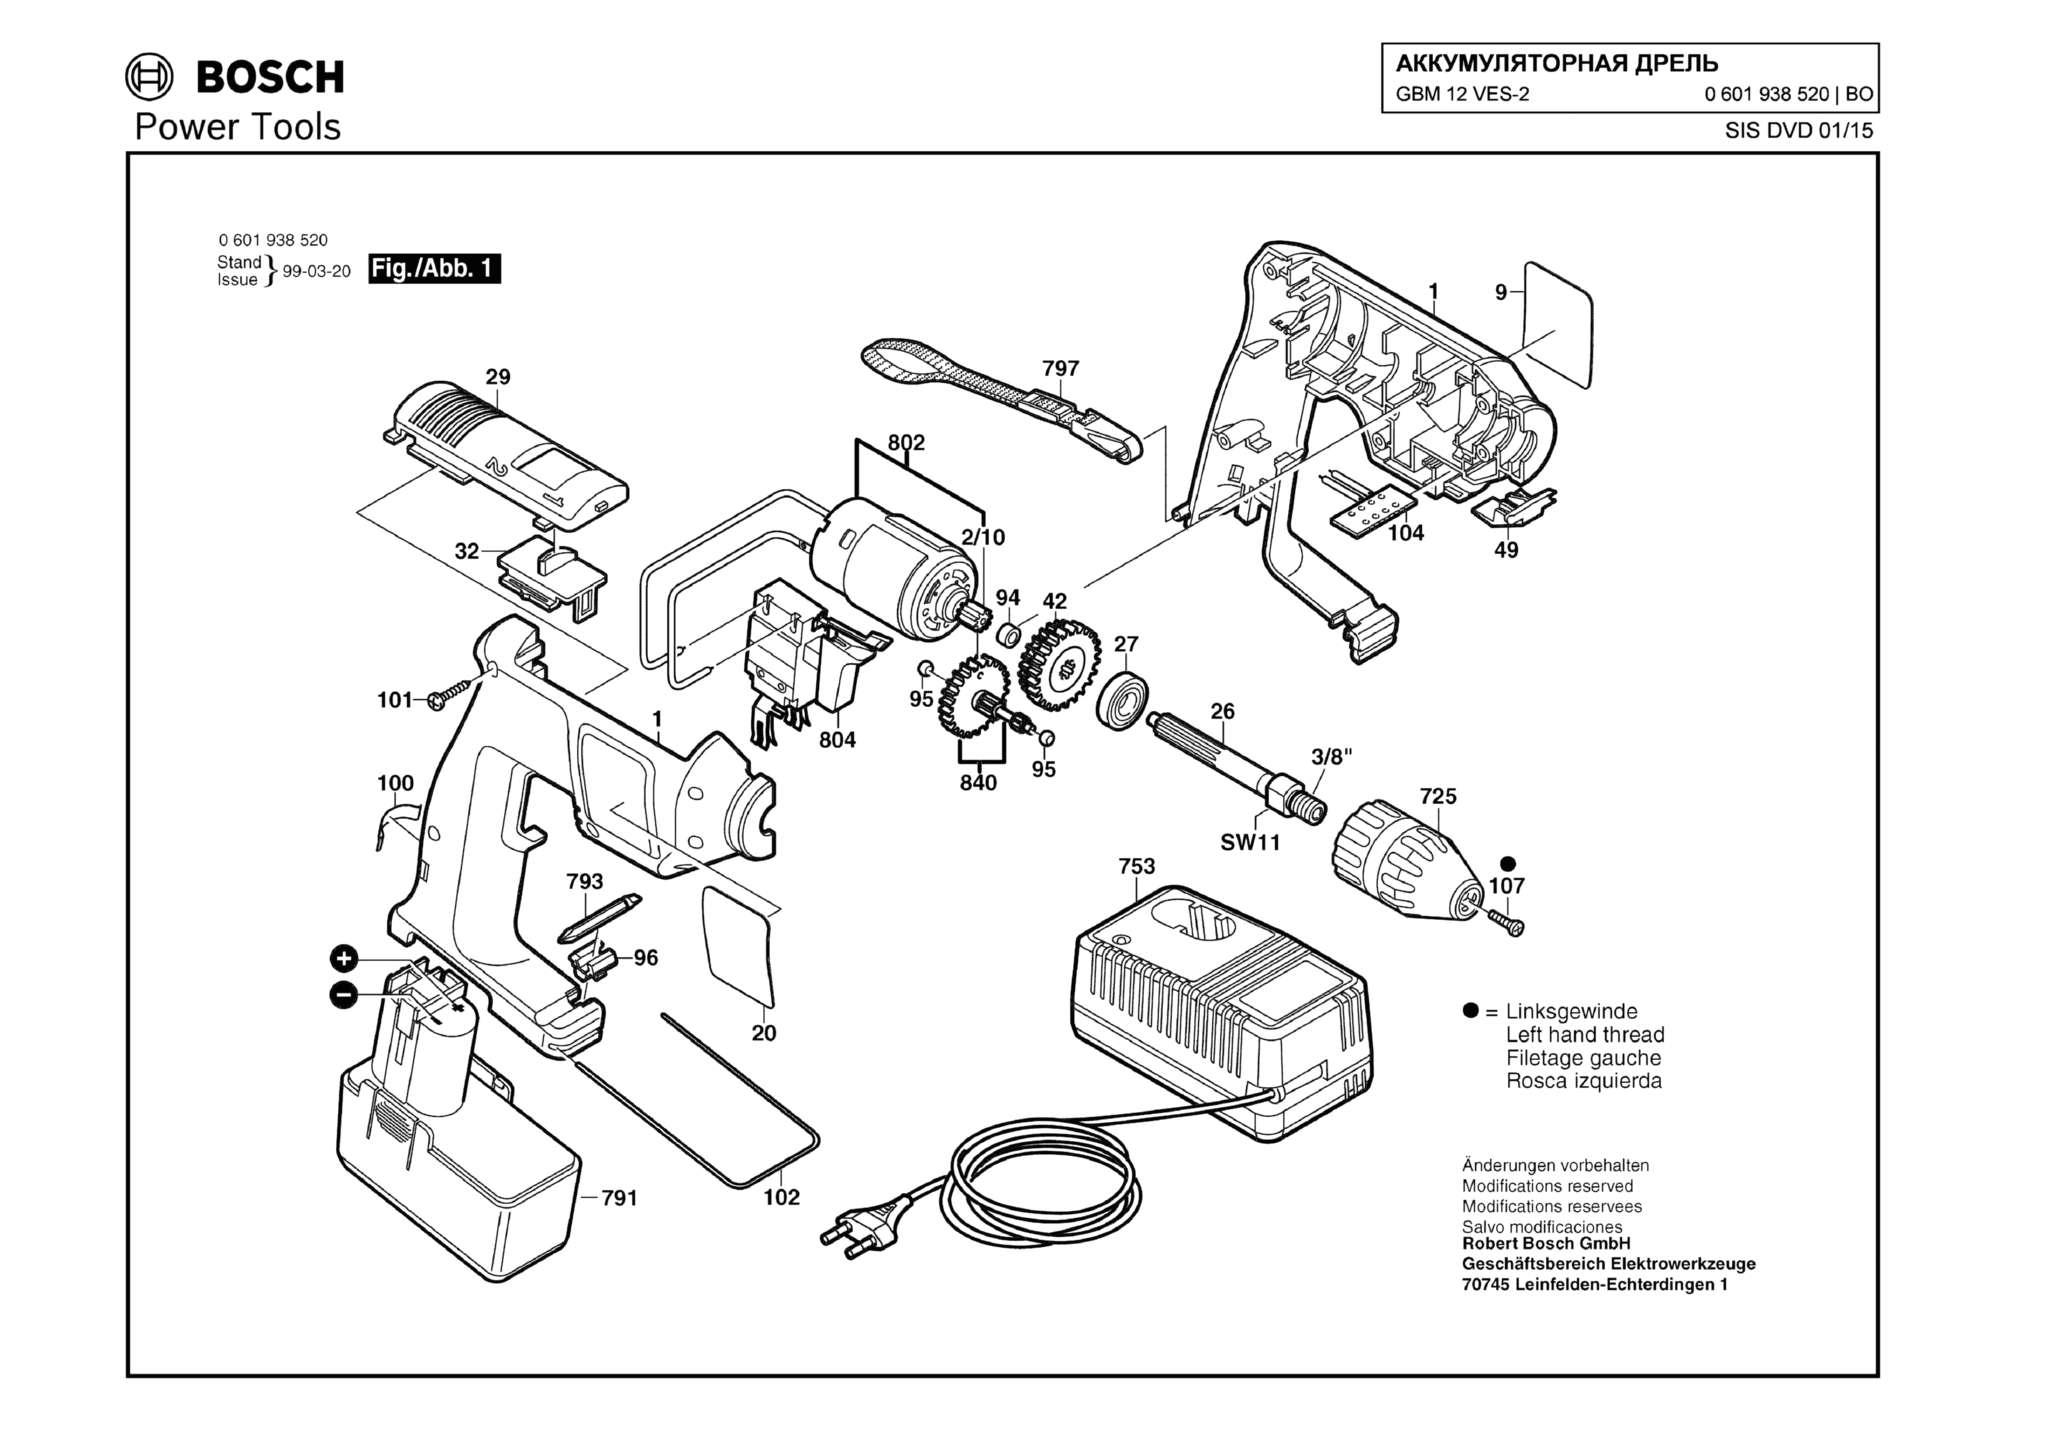 Запчасти, схема и деталировка Bosch GBM 12 VES-2 (ТИП 0601938520)